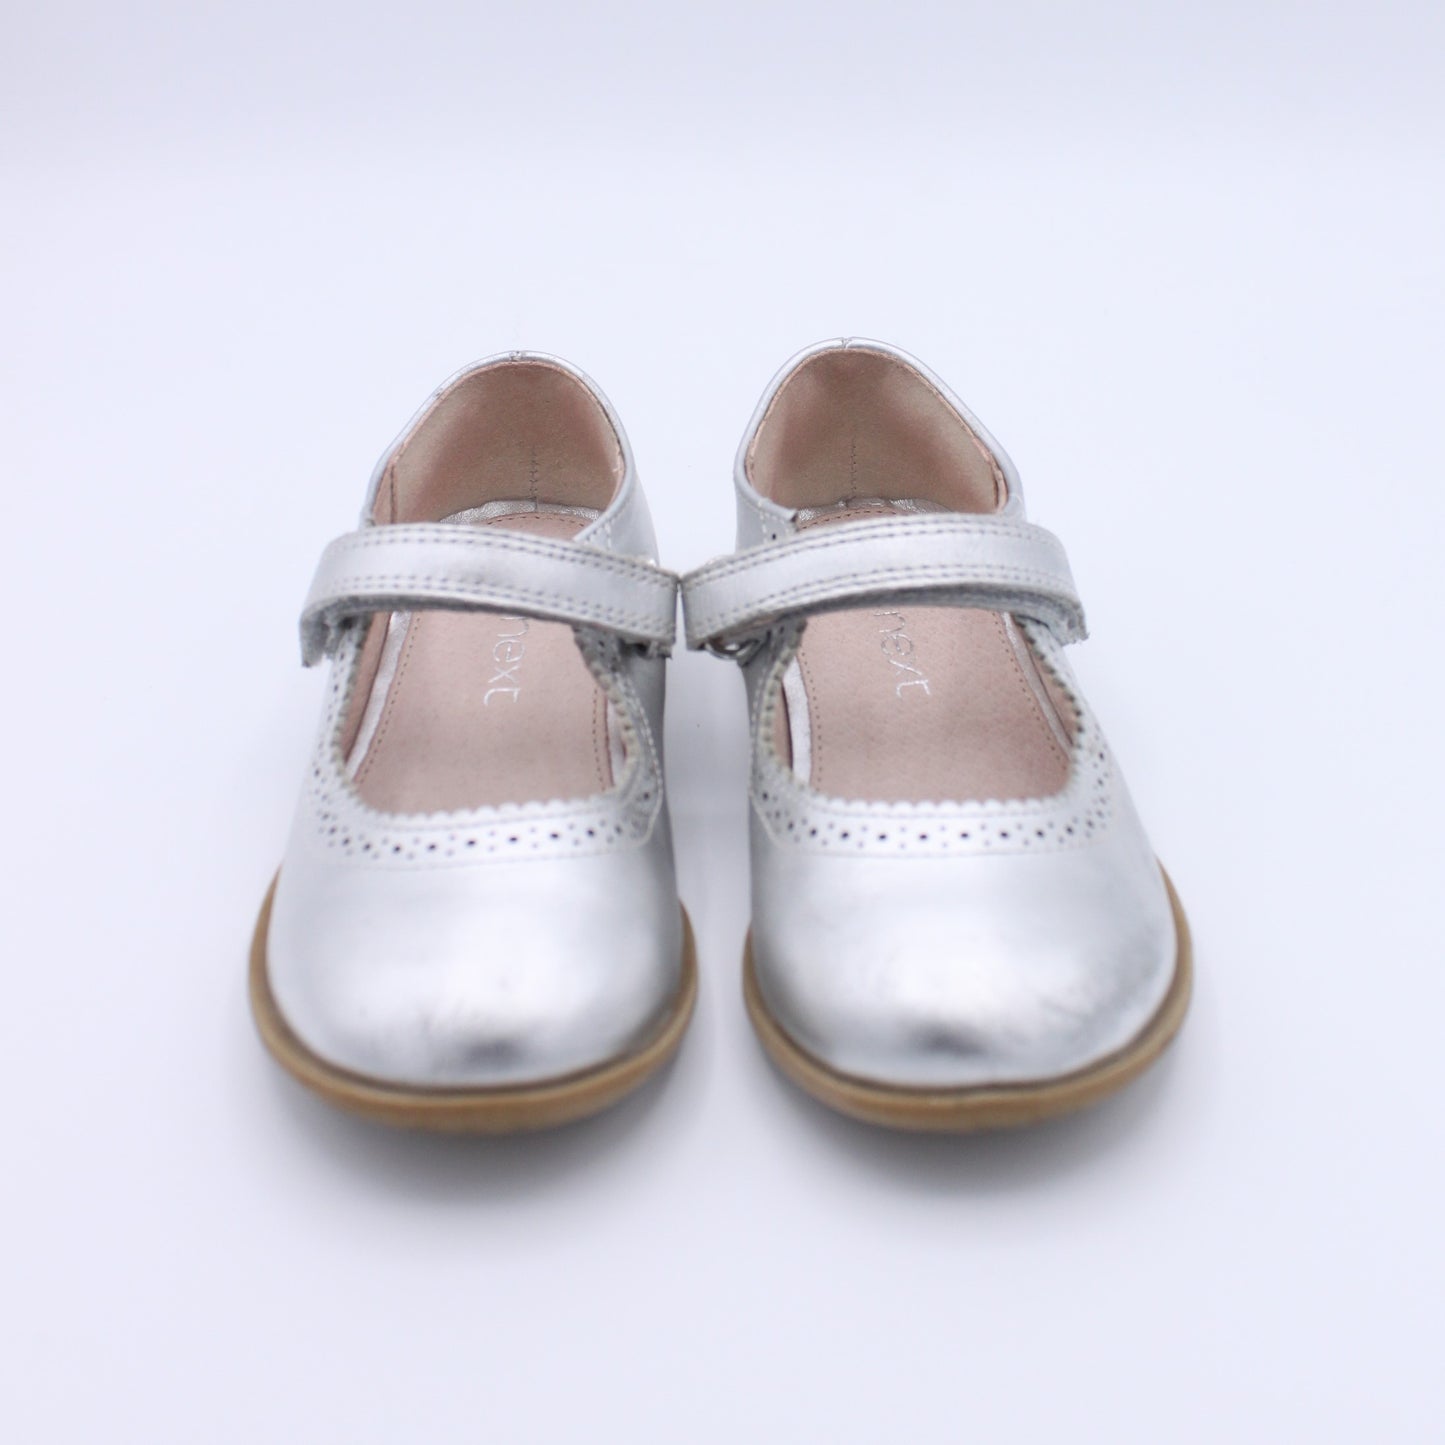 NEXT Pre-loved Mary Jane Shoes (EU26.5)